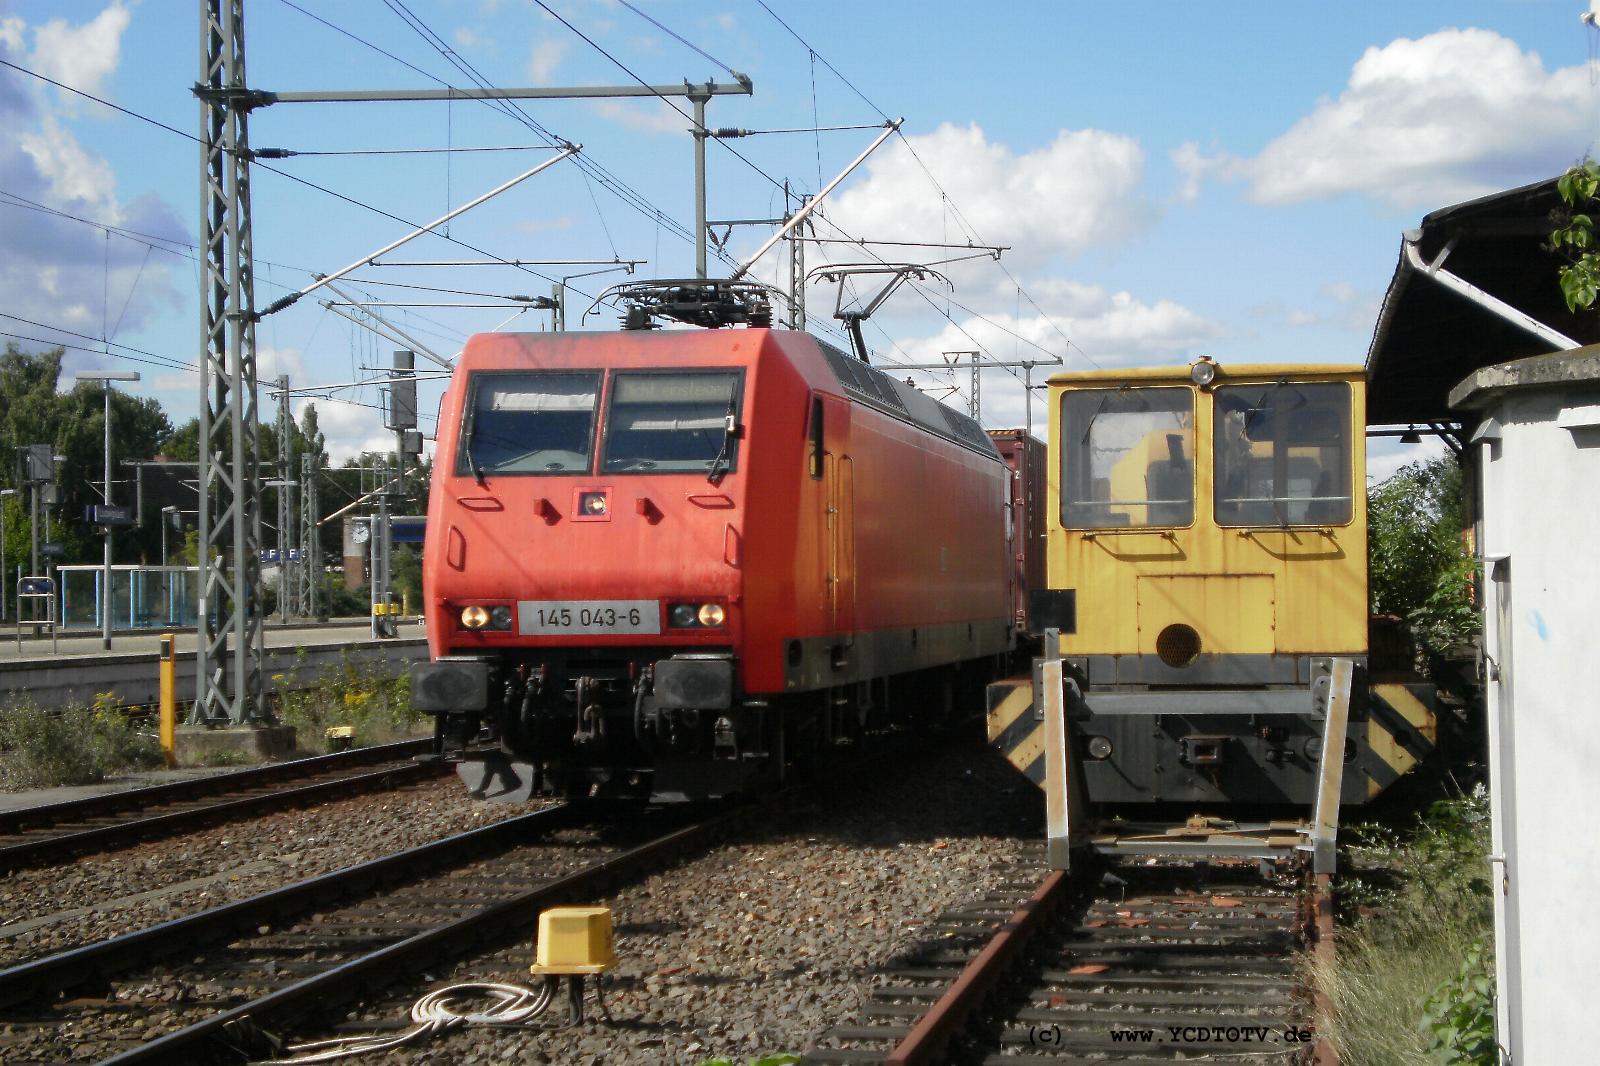 Ludwigslust Bahnhof 07.09.2010, 145 043-6 und was gelbes 